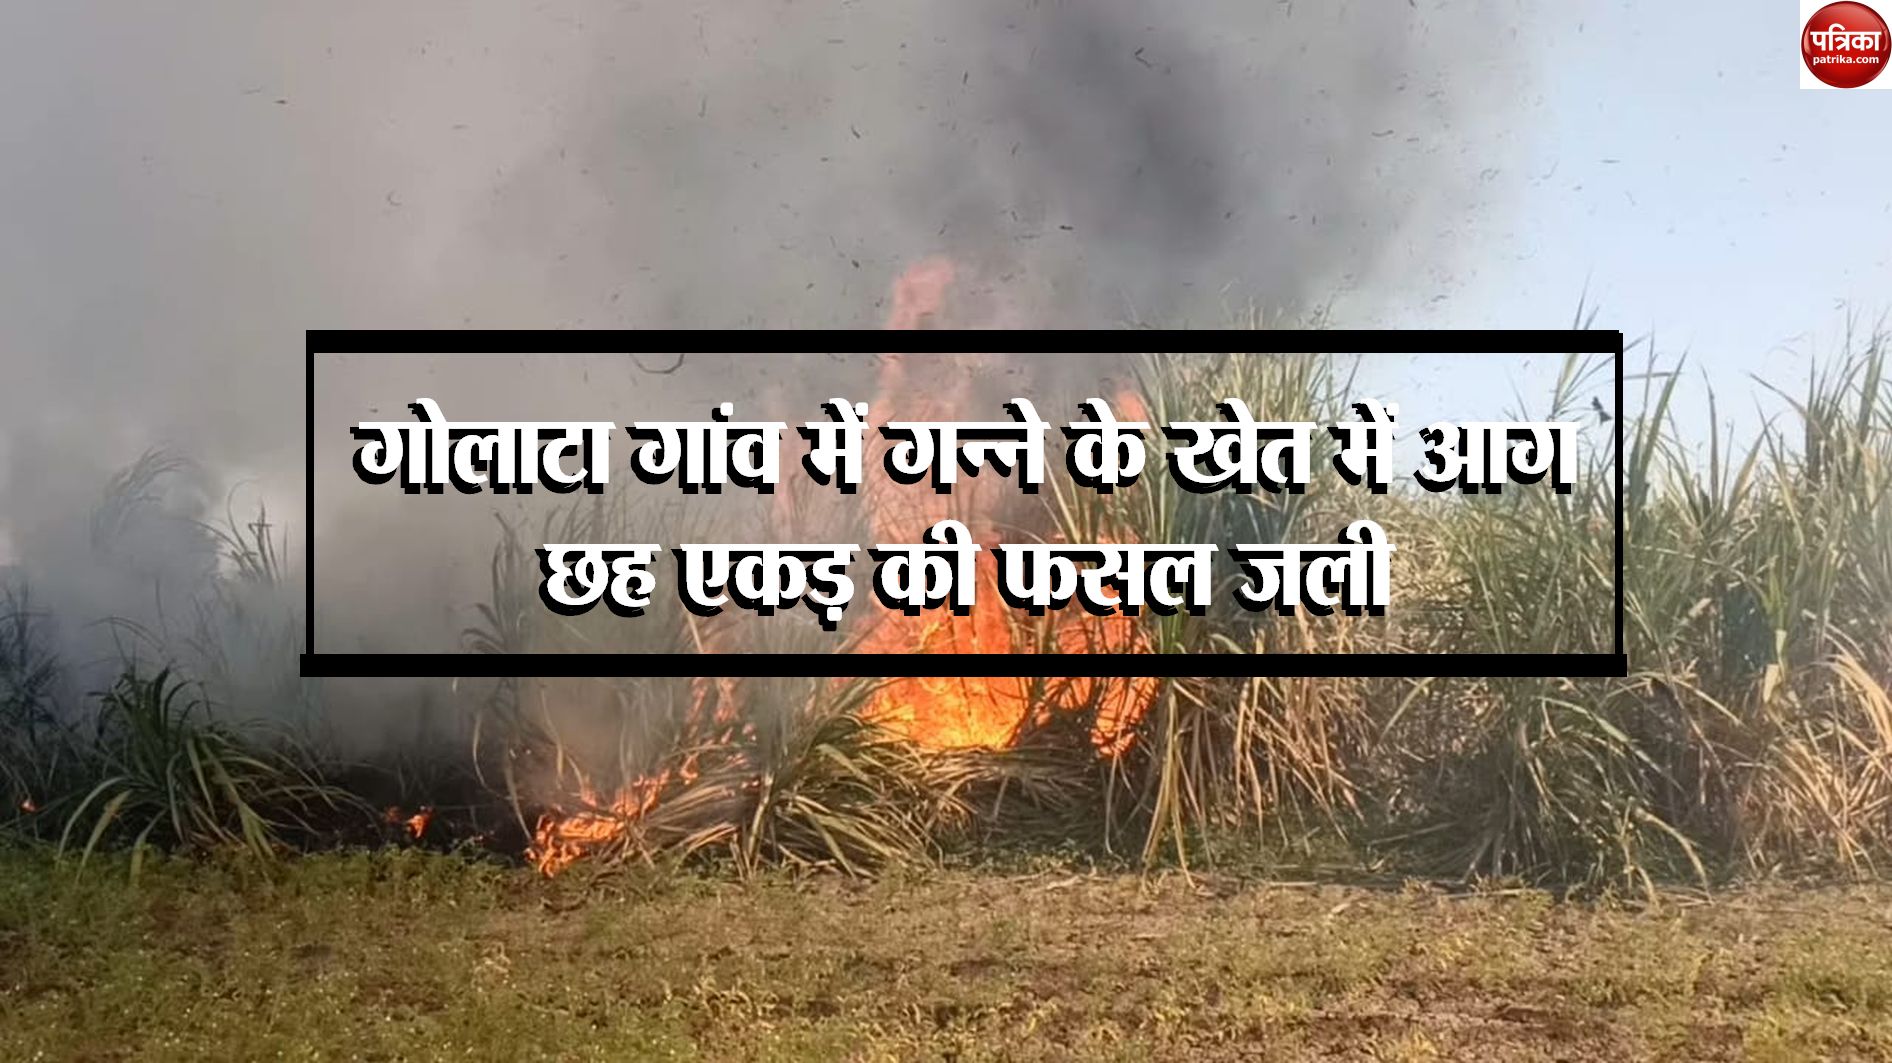 Sugarcane field caught fire in Golata village